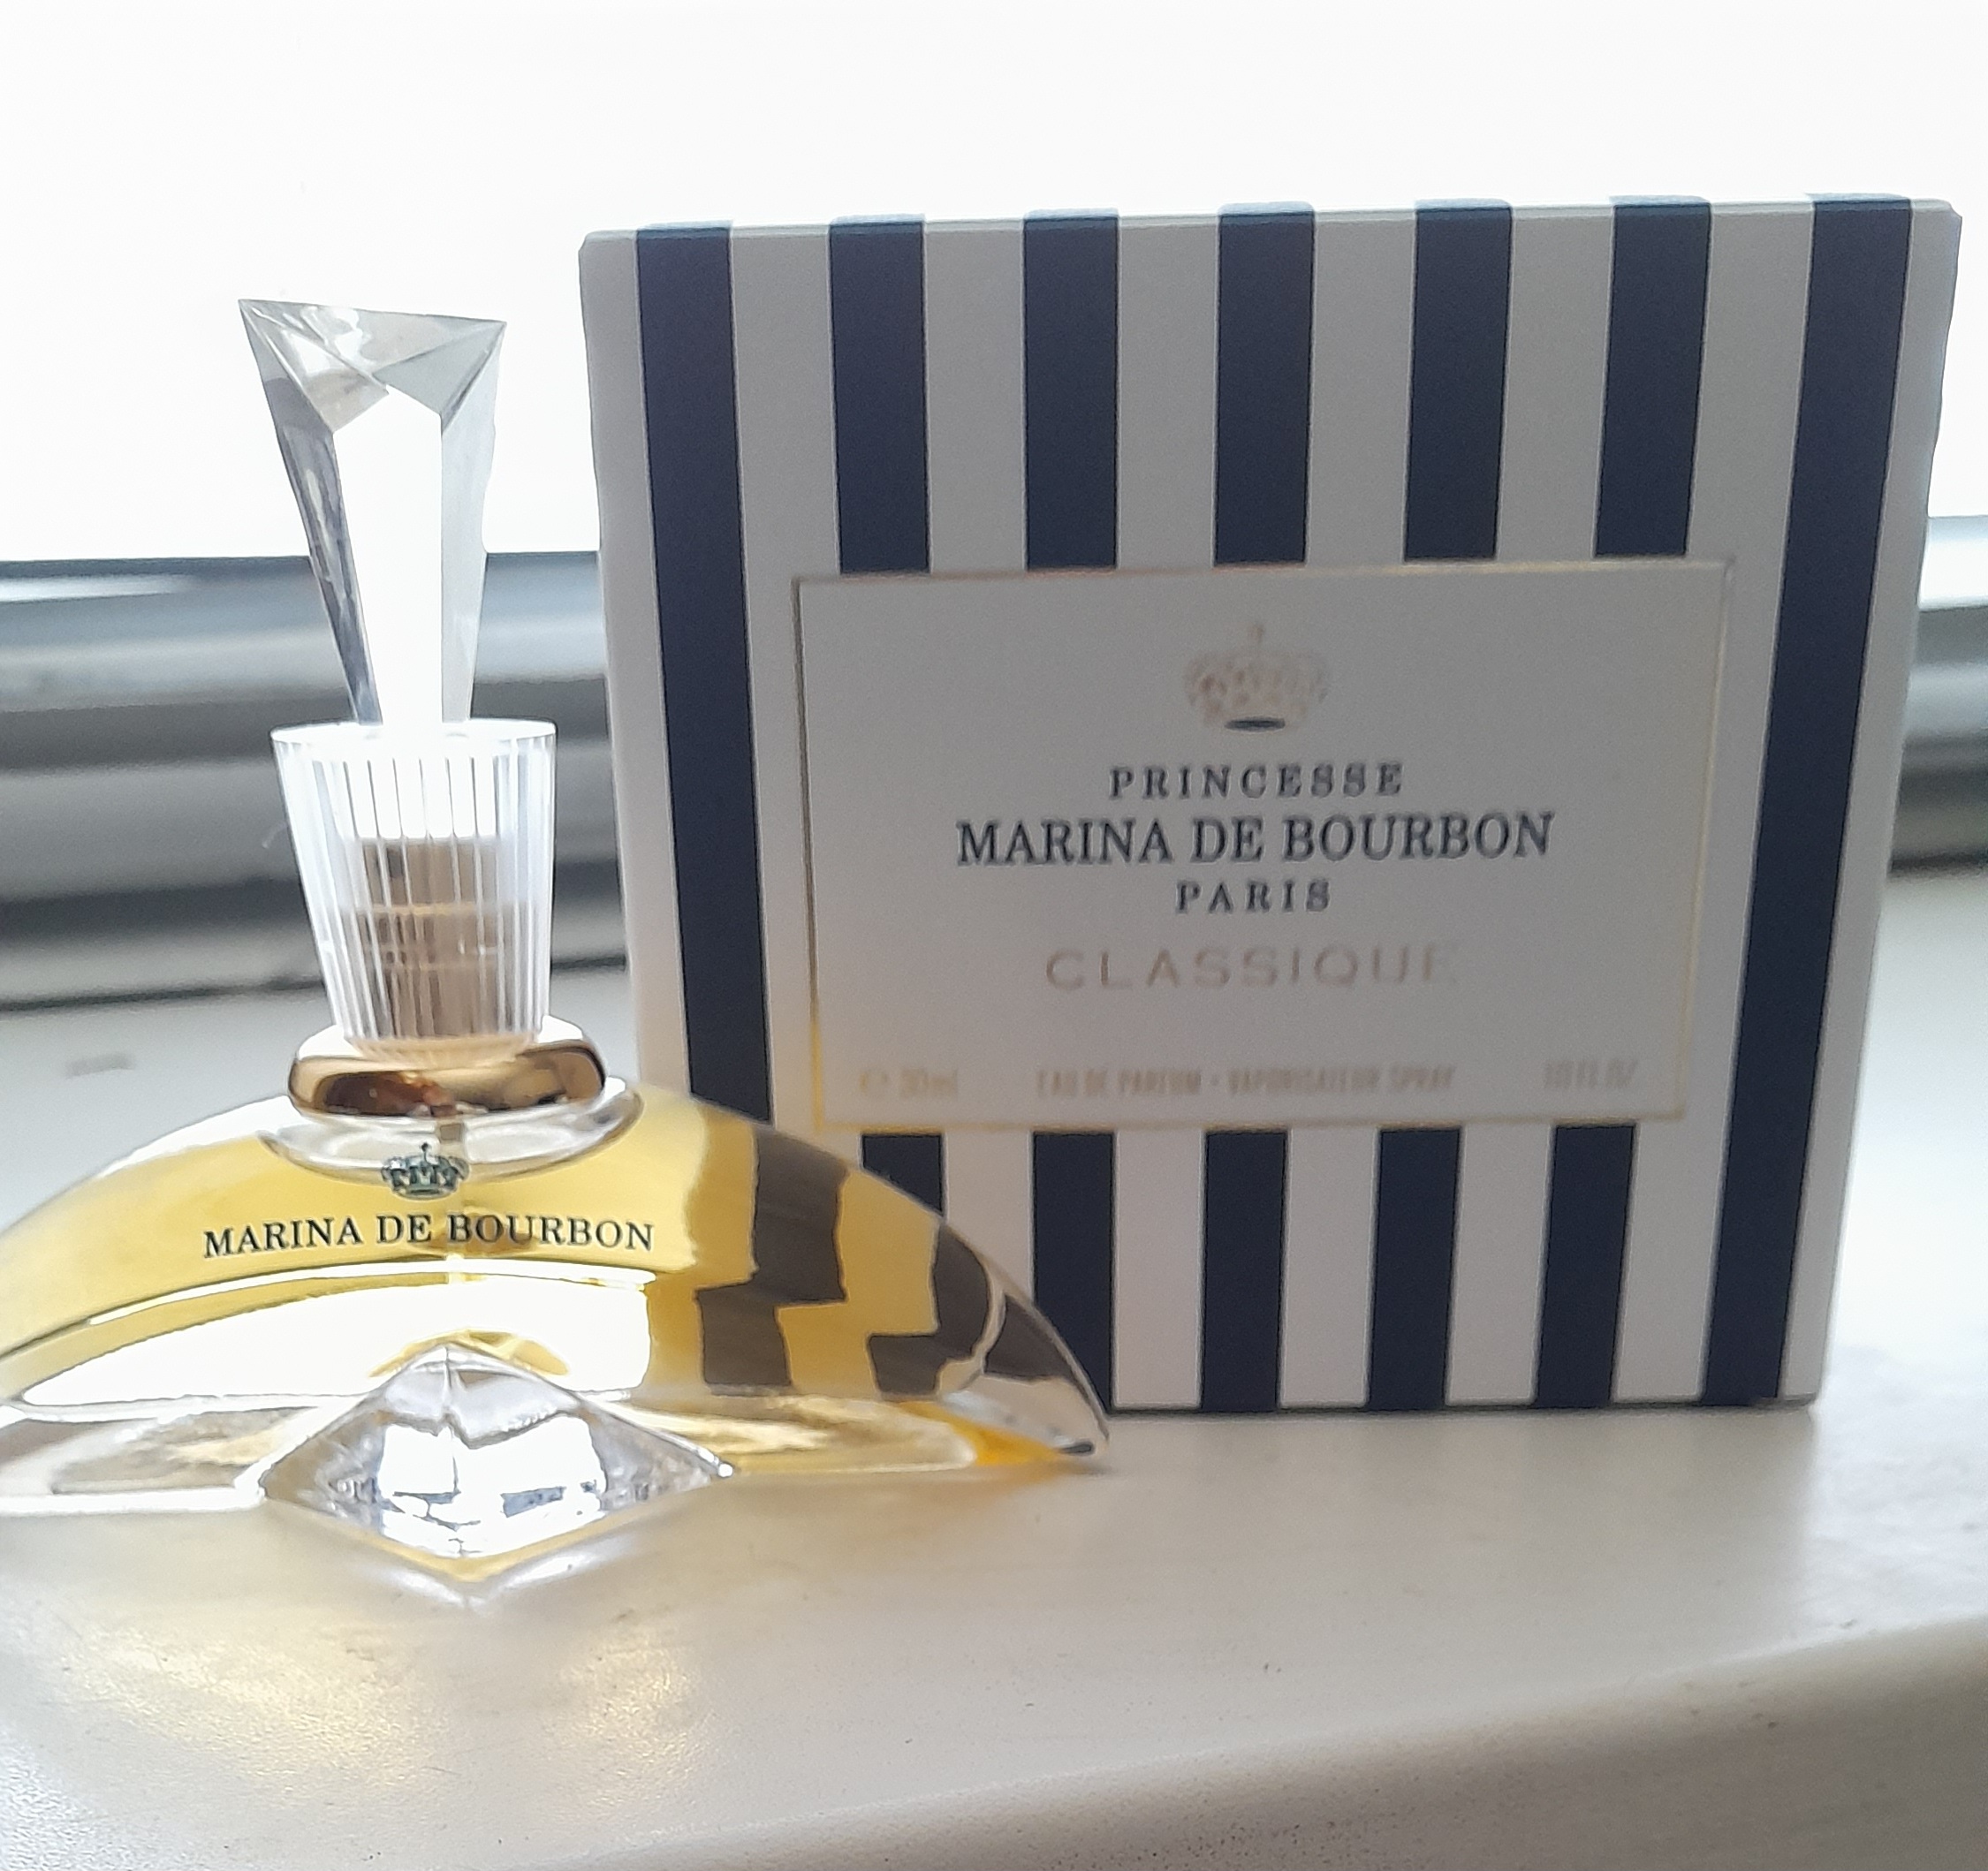 Marina de bourbon 30 мл. Духи Style Princesse Marina de Bourbon. Marina de Bourbon classique пары вода жен 30 мл.